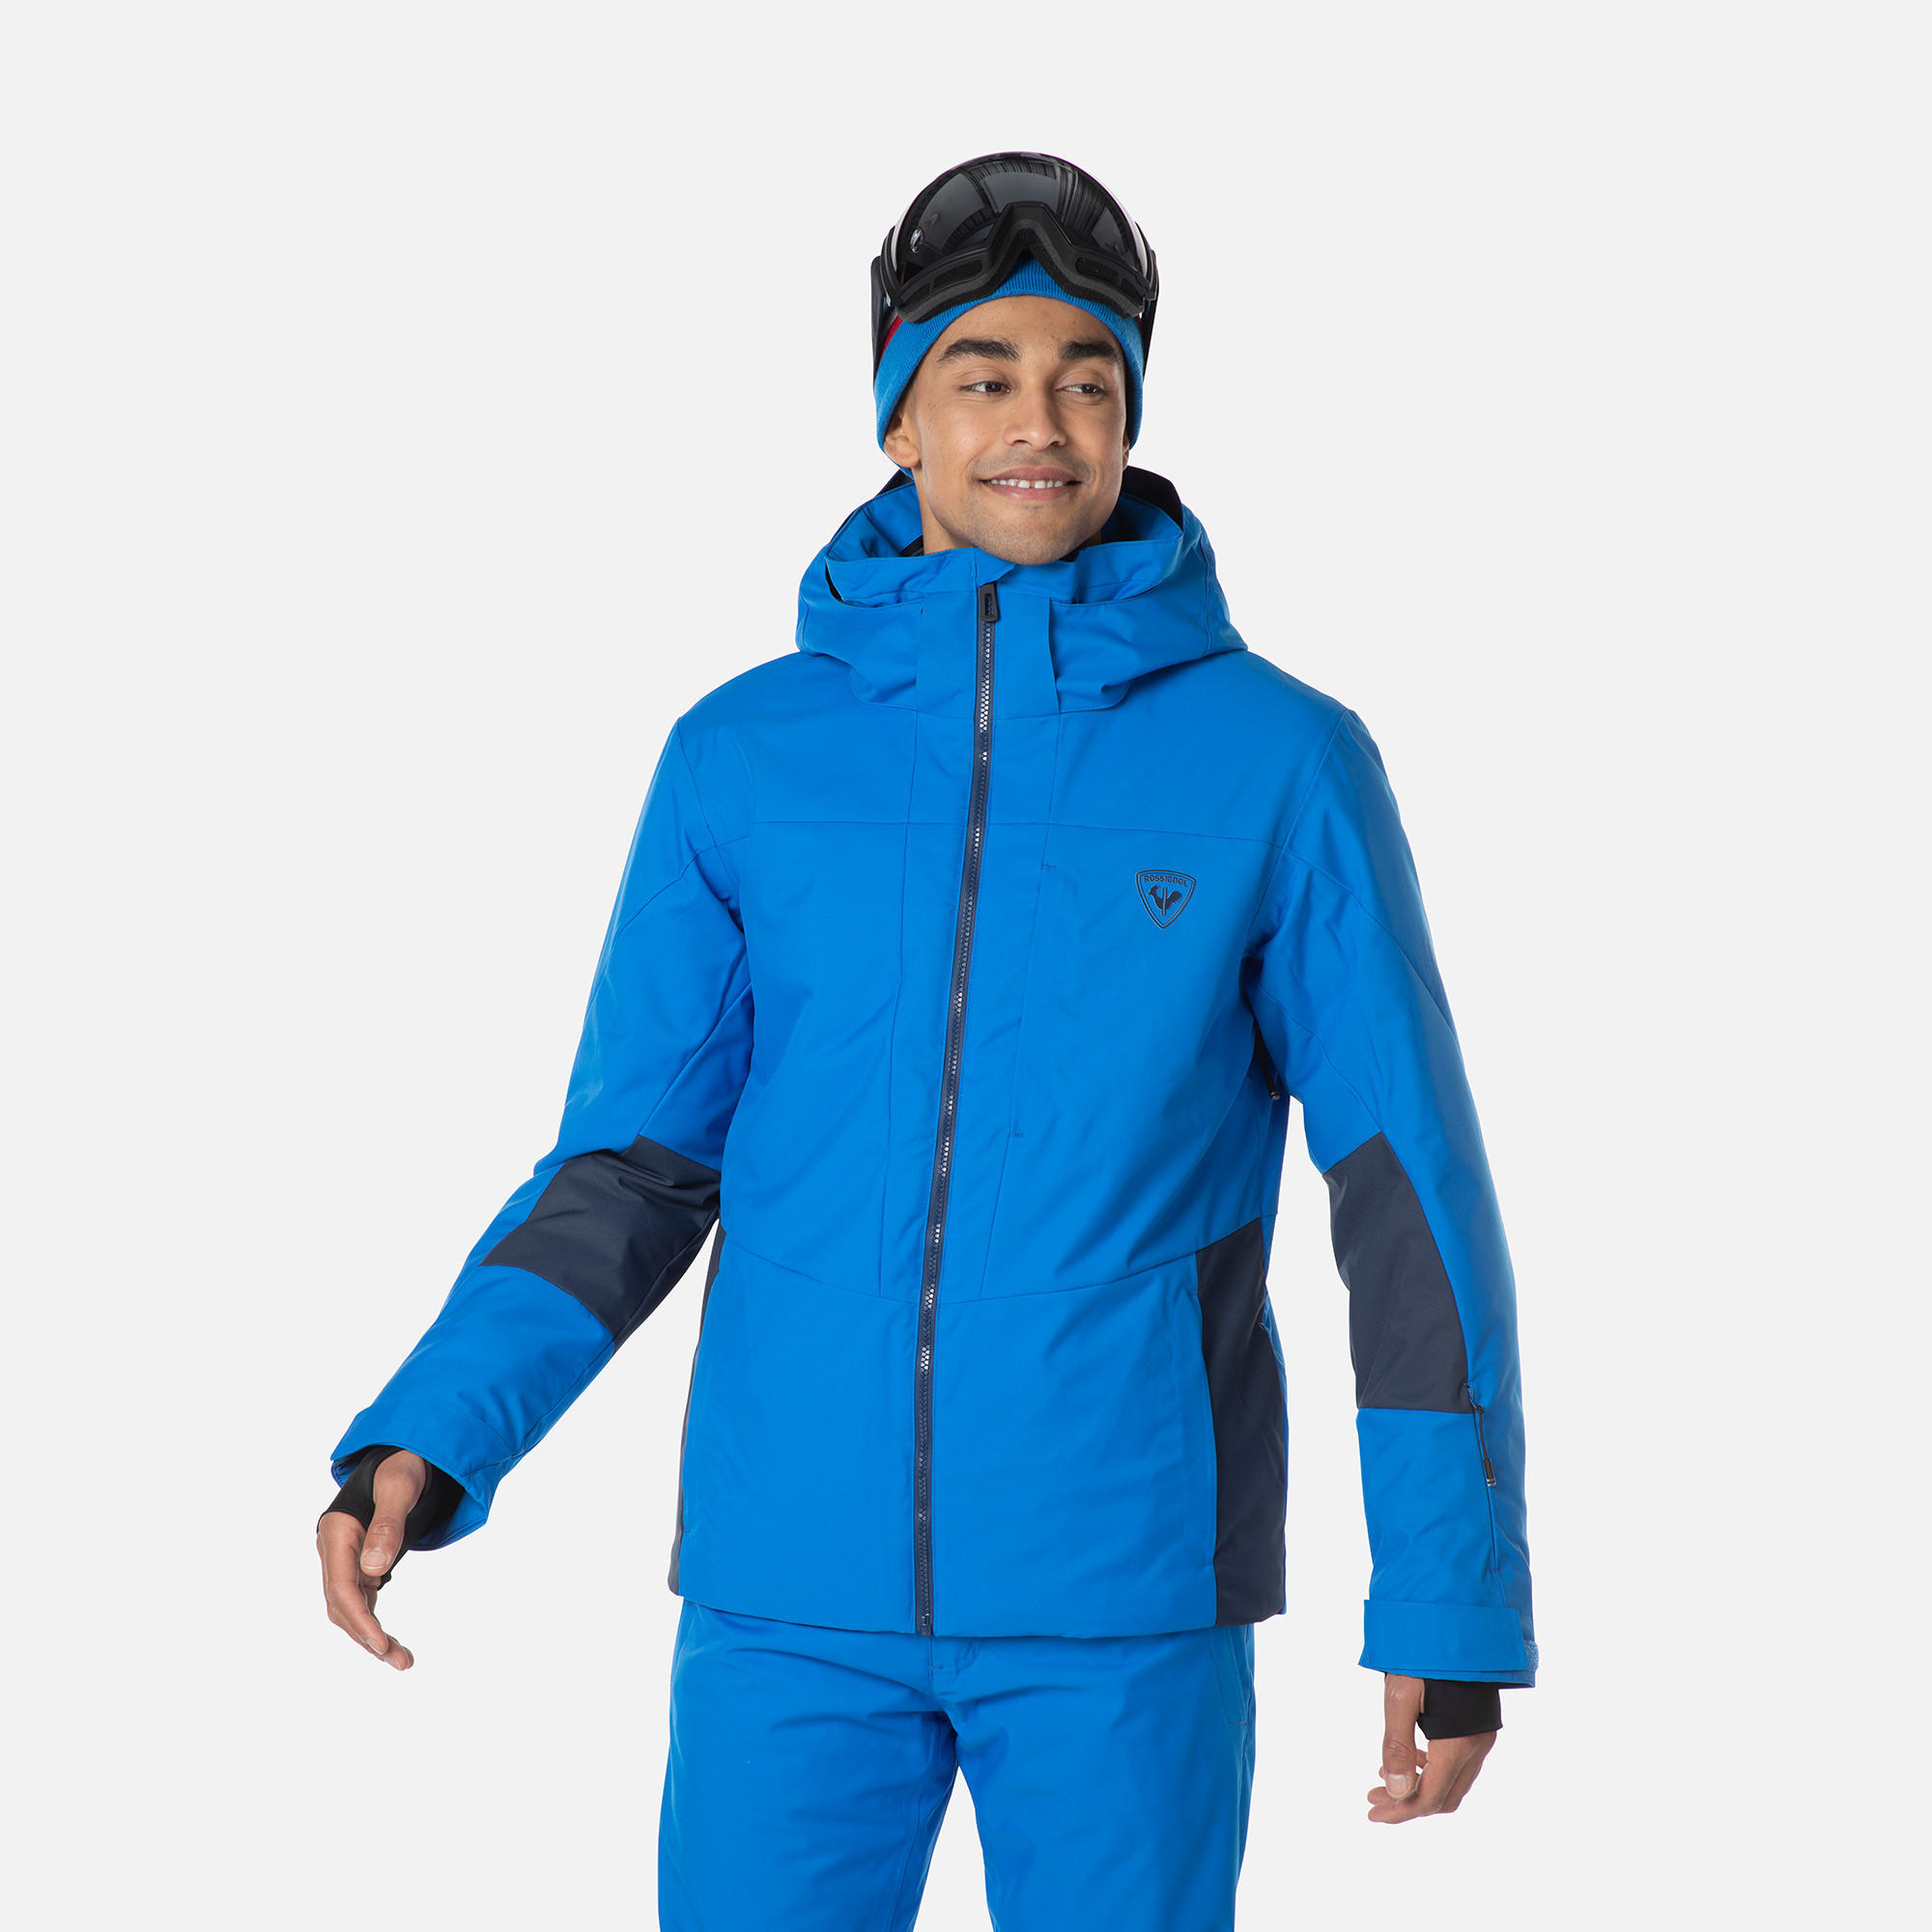 Vestes de ski Hommes à prix discount - Blousons et Doudounes hommes